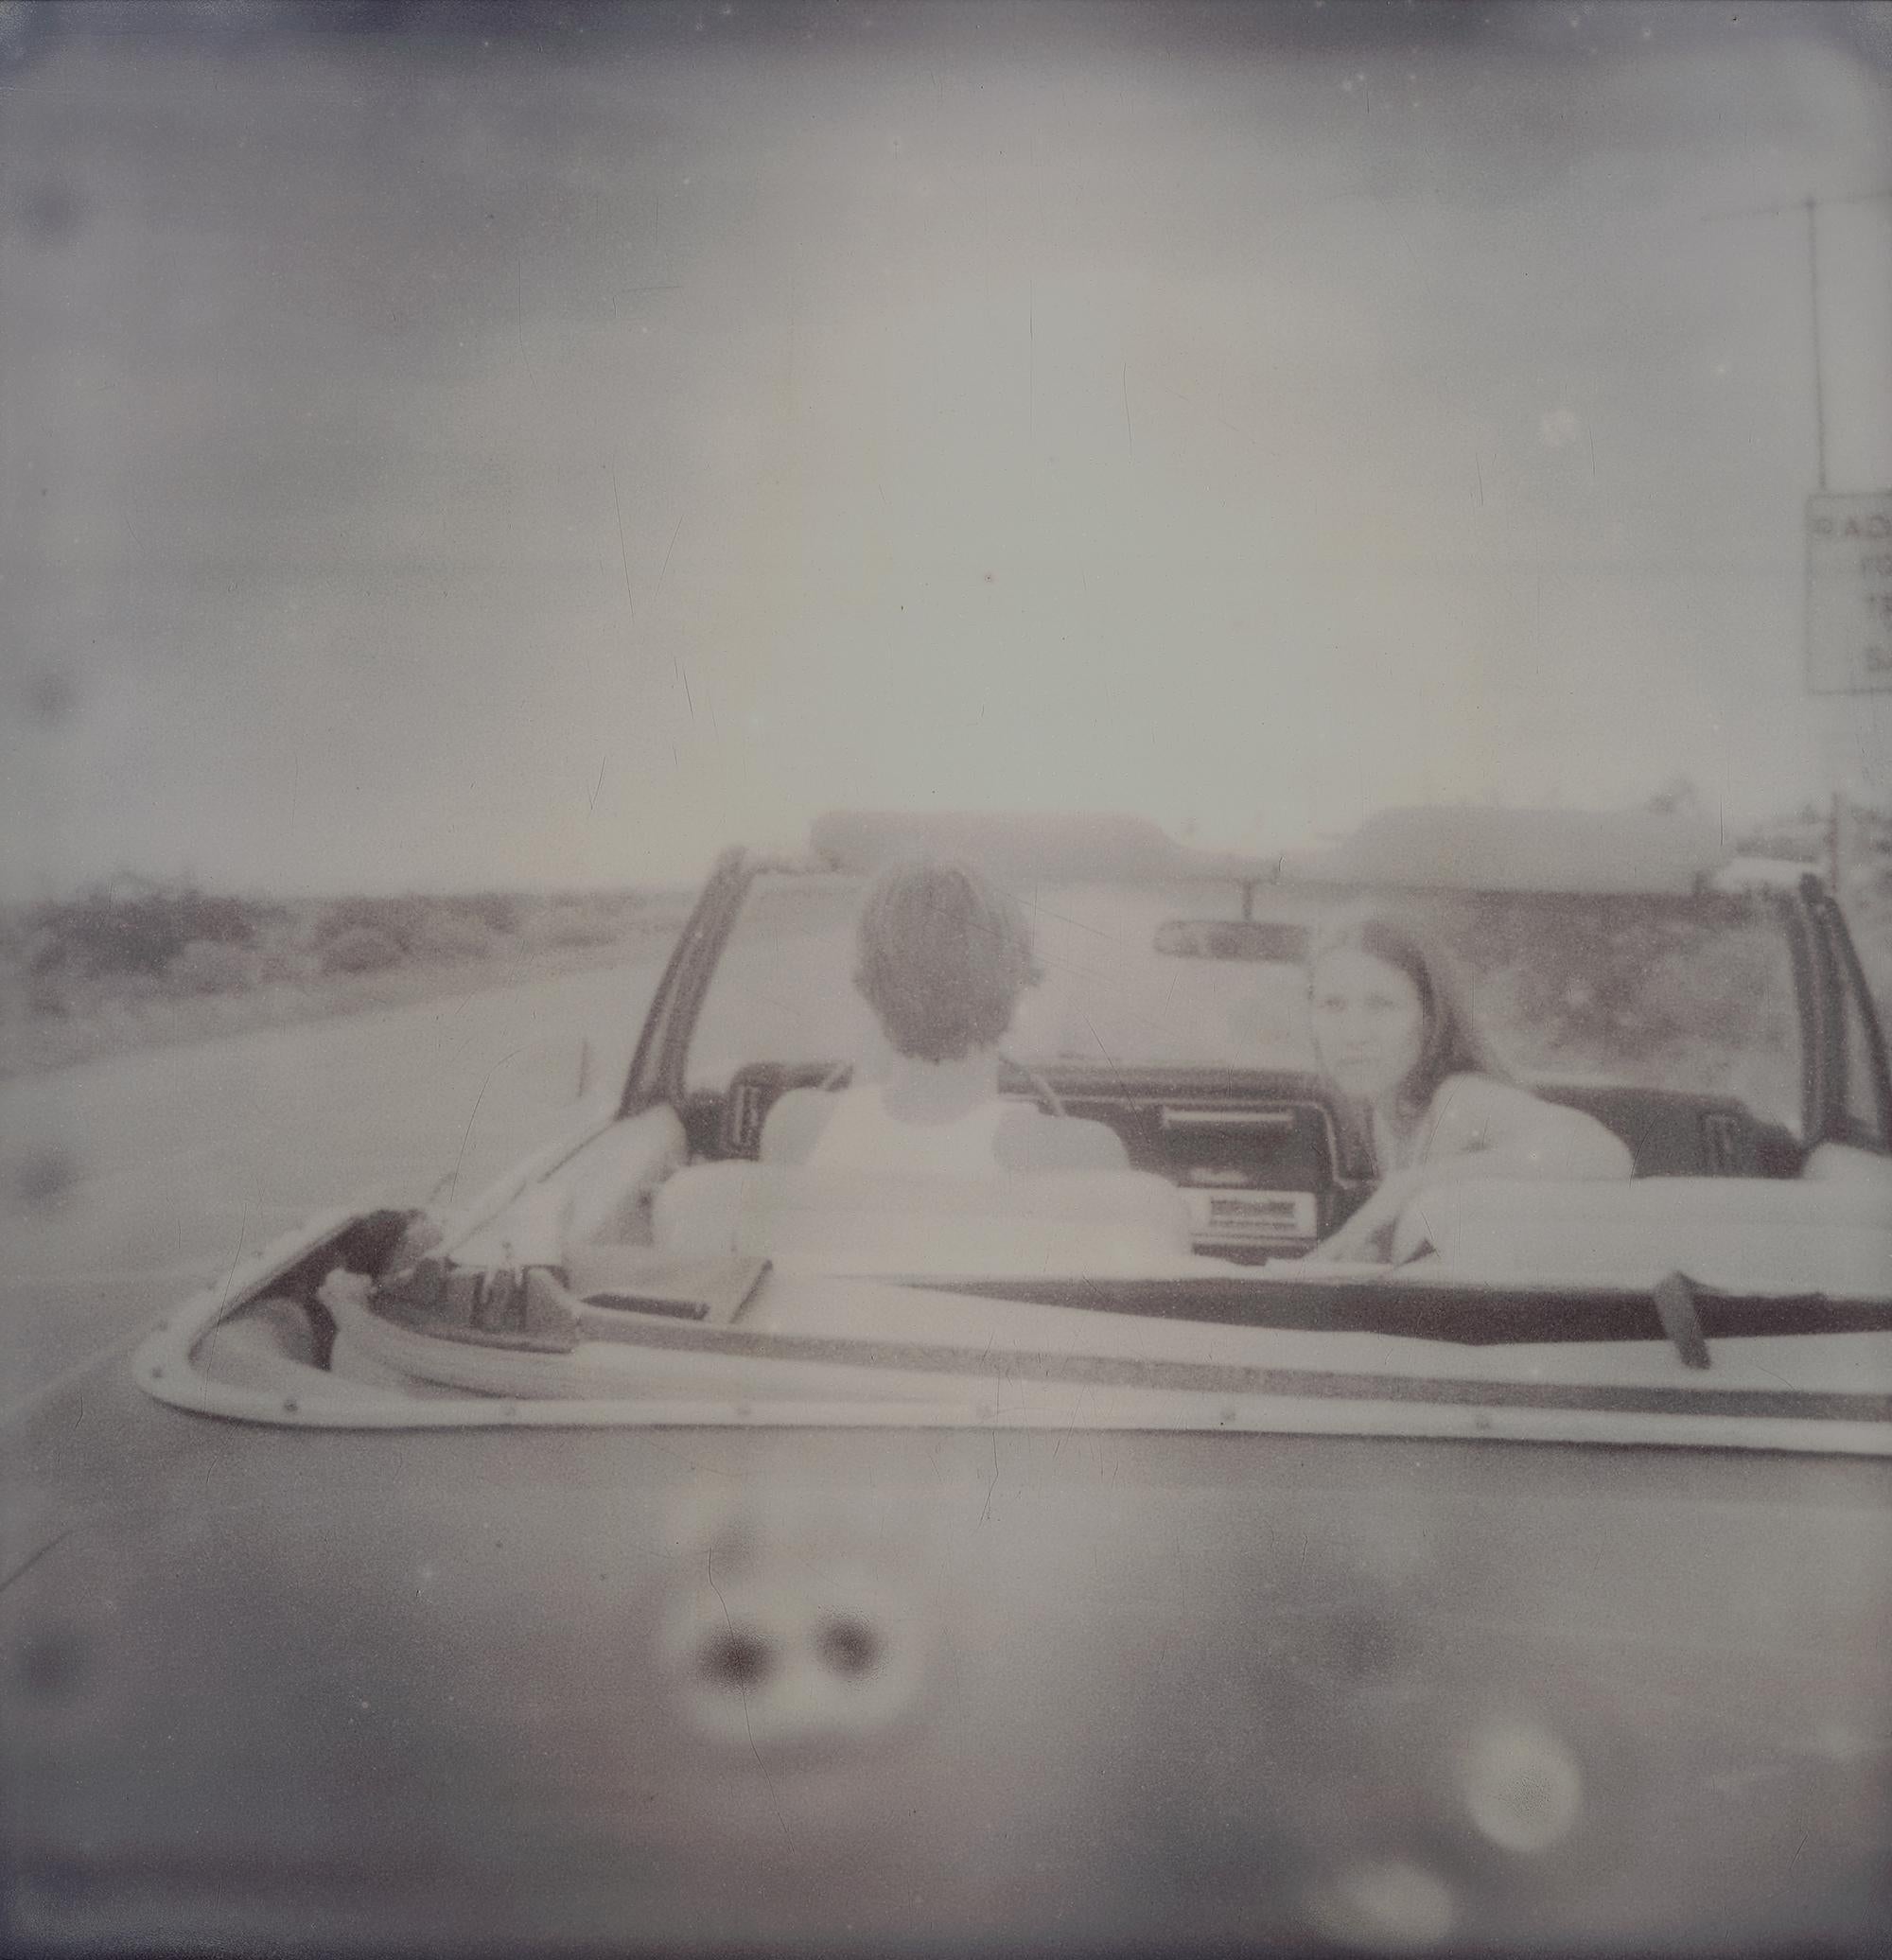 Leaving - Sidewinder, analog, triptych - Photograph by Stefanie Schneider